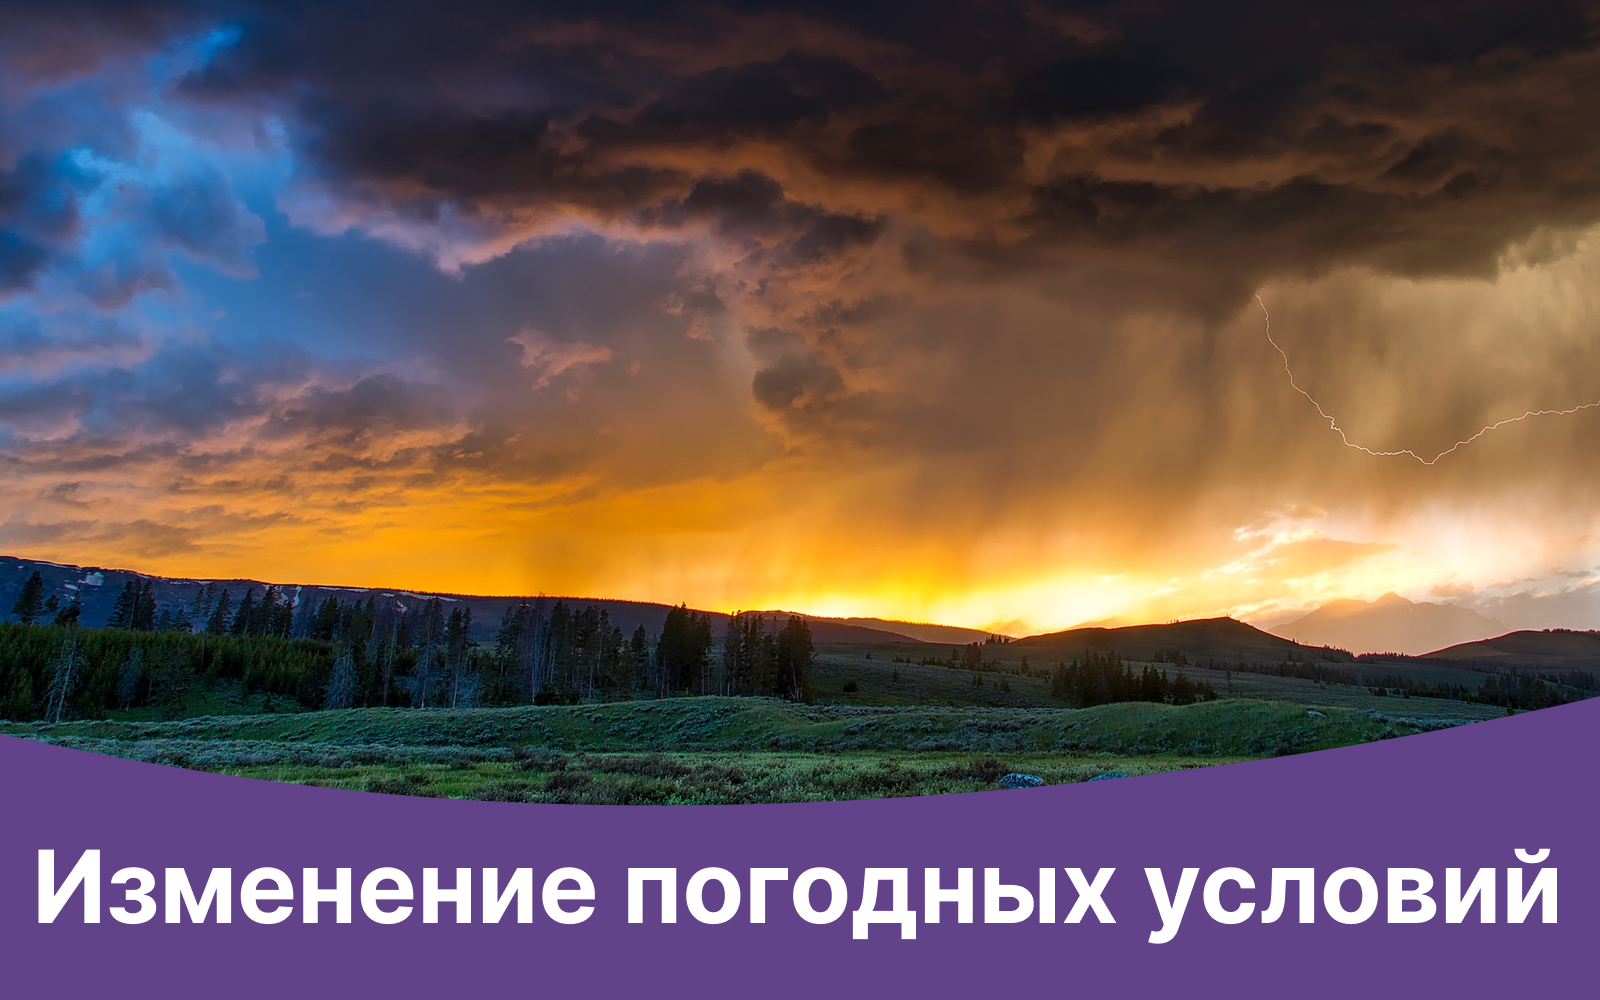 Уважаемые граждане!
По данным МЧС России по Краснодарскому краю: в период с 14 по 16 ноября местами в крае ожидается очень сильный дождь, сильный ливень.